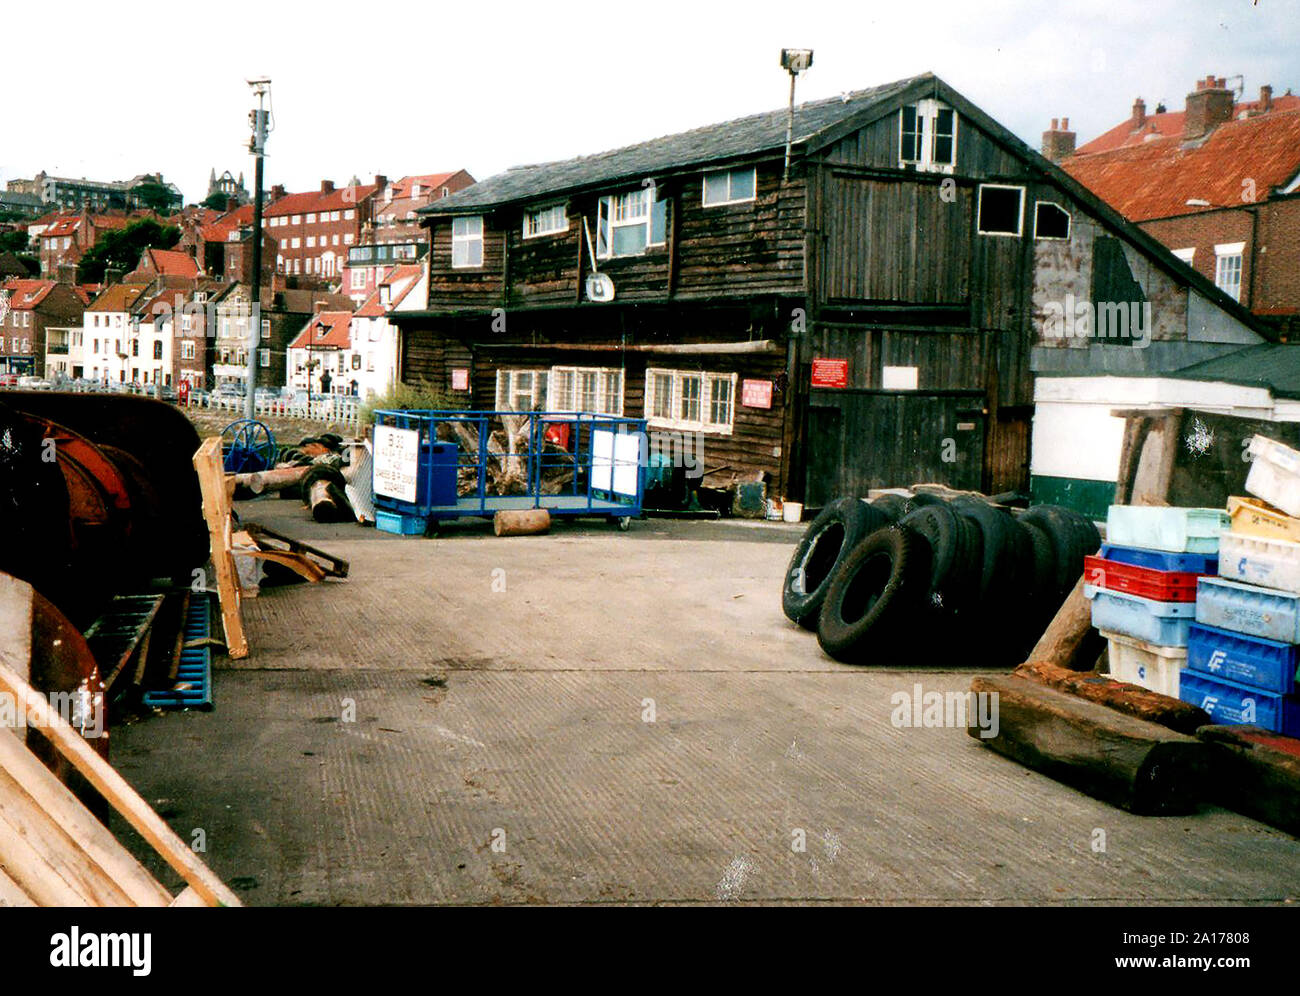 Una fotografia vintage a Whitby, North Yorkshire, che mostra gli ultimi della città di legno storico harbourside magazzini sulla banchina a Church Street, Whitby, Yorkshire,UK.,appena prima della sua demolizione. (Ora Whitby cantiere) Foto Stock